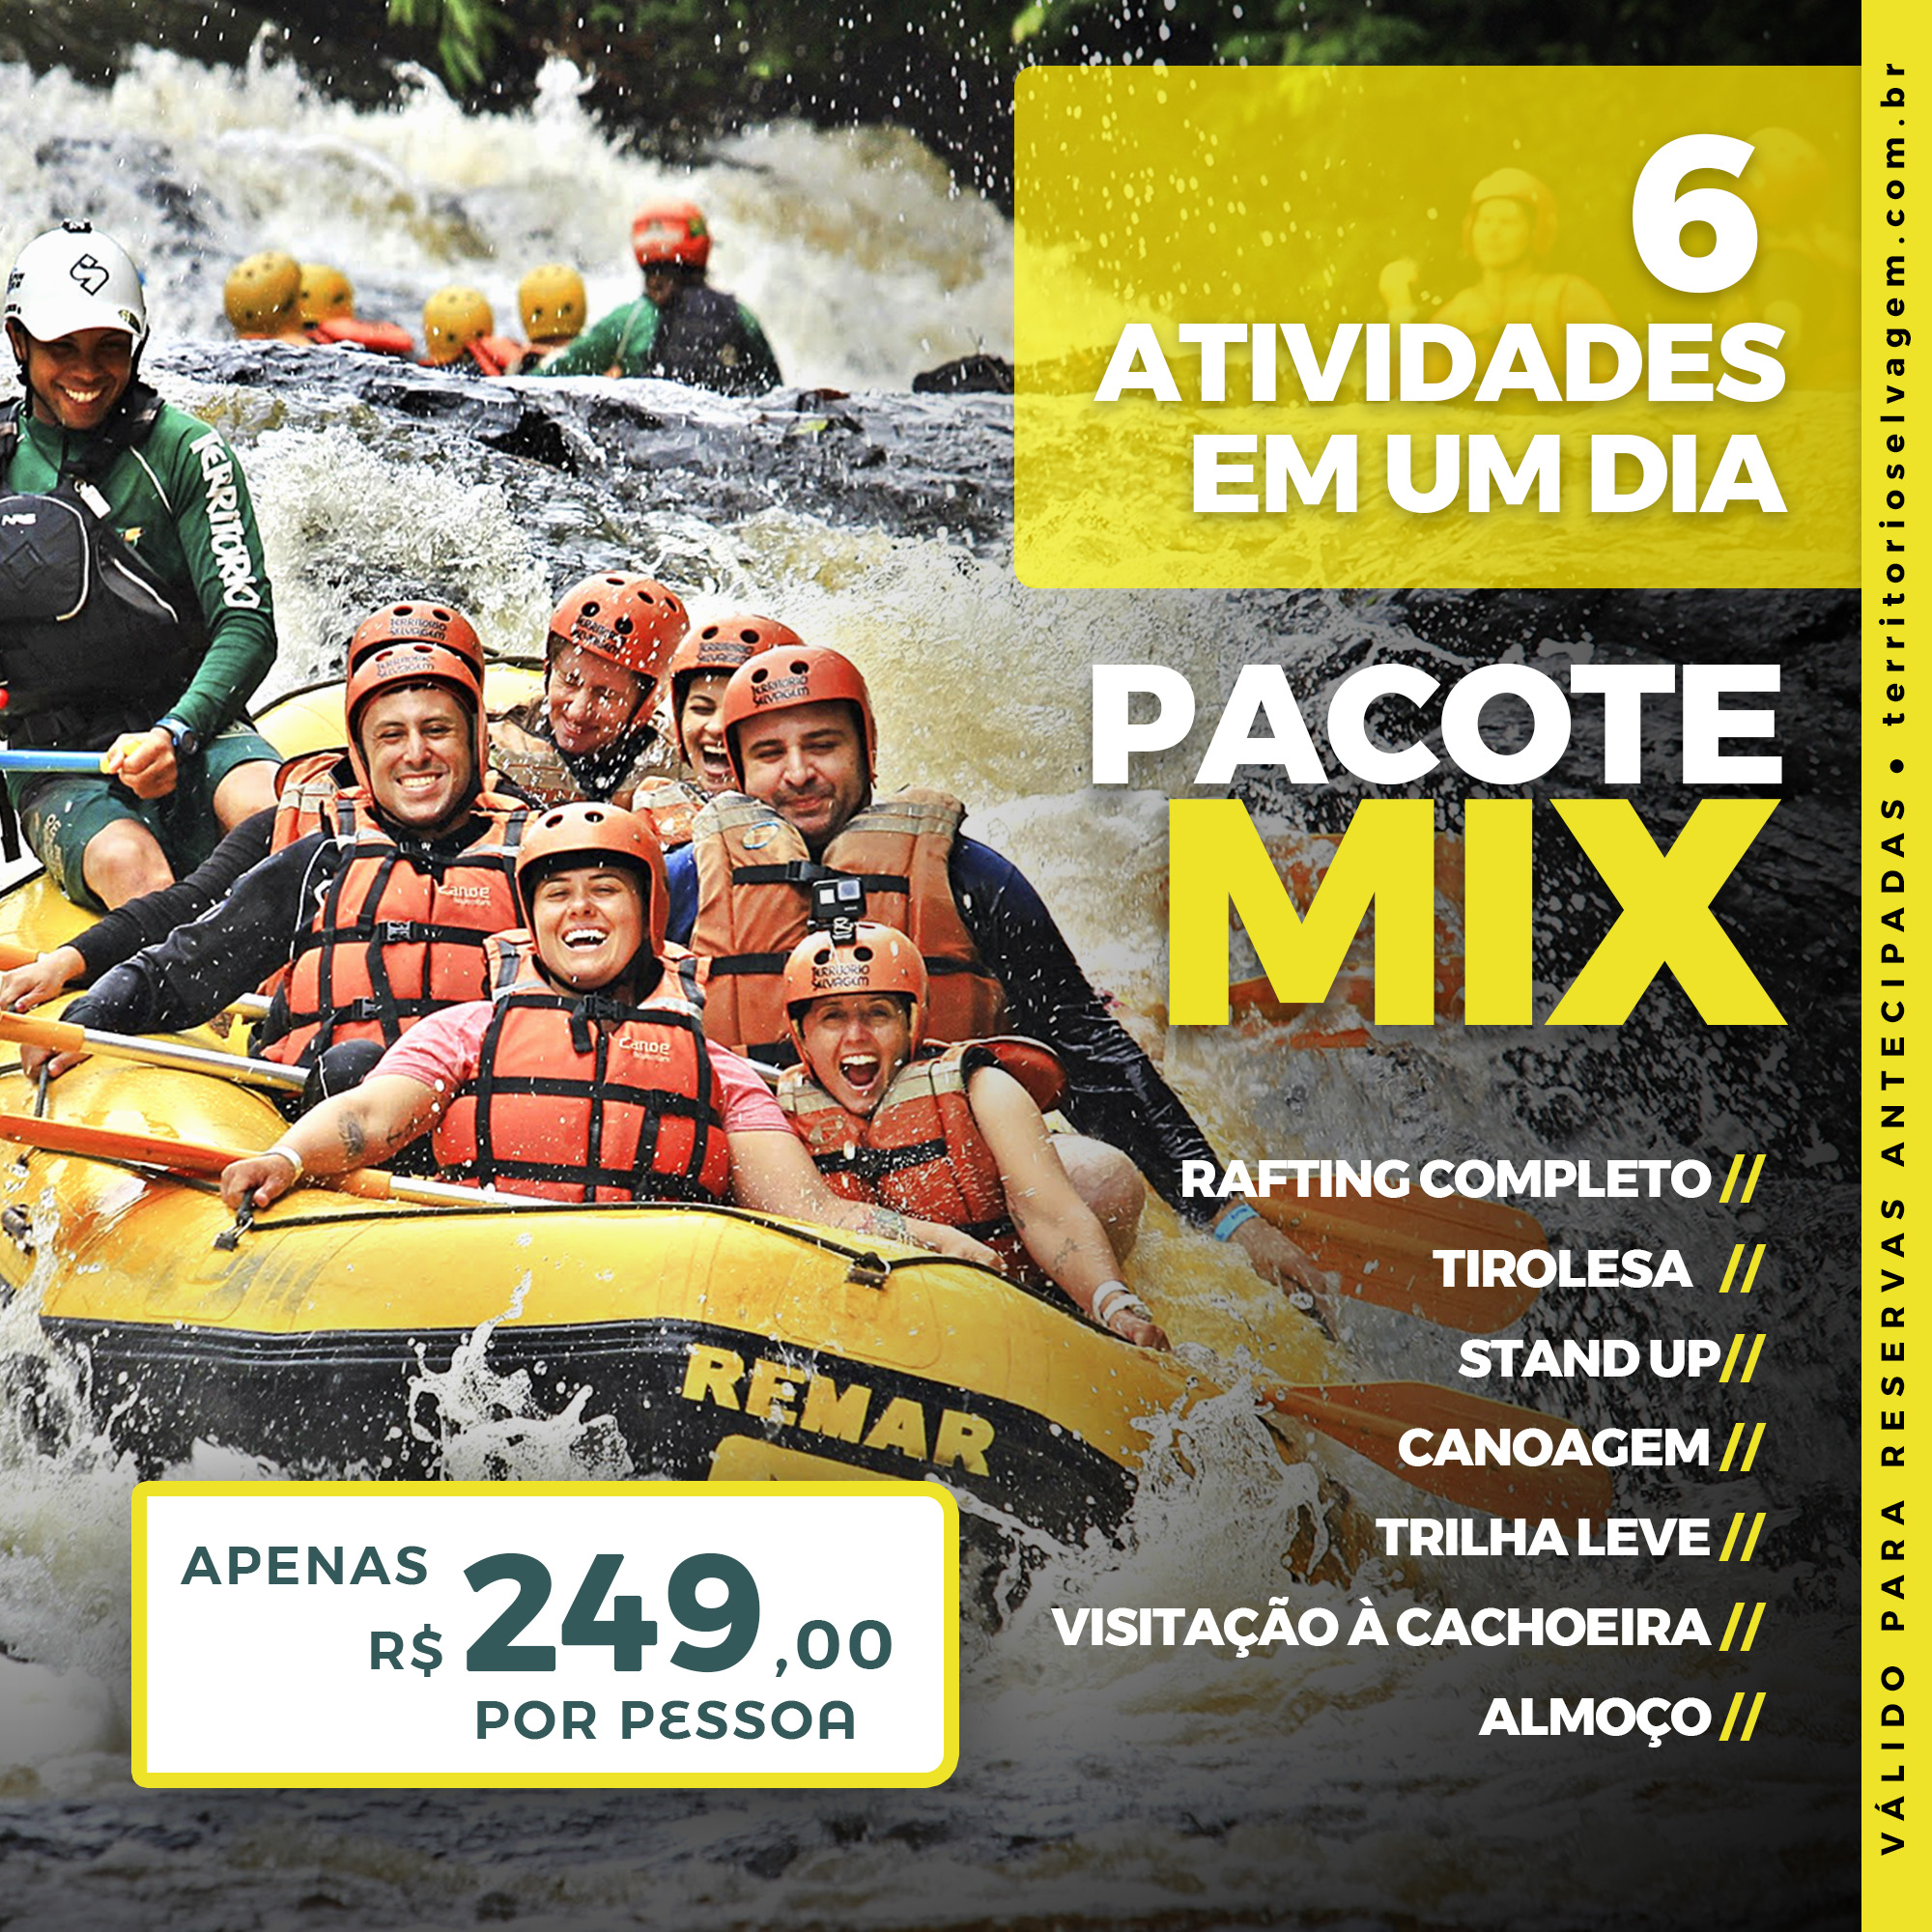 Rafting Completo + Vôo das Cachoeiras + Stand Up + Canoagem + Trilha Leve + Cachoeira + Almoço